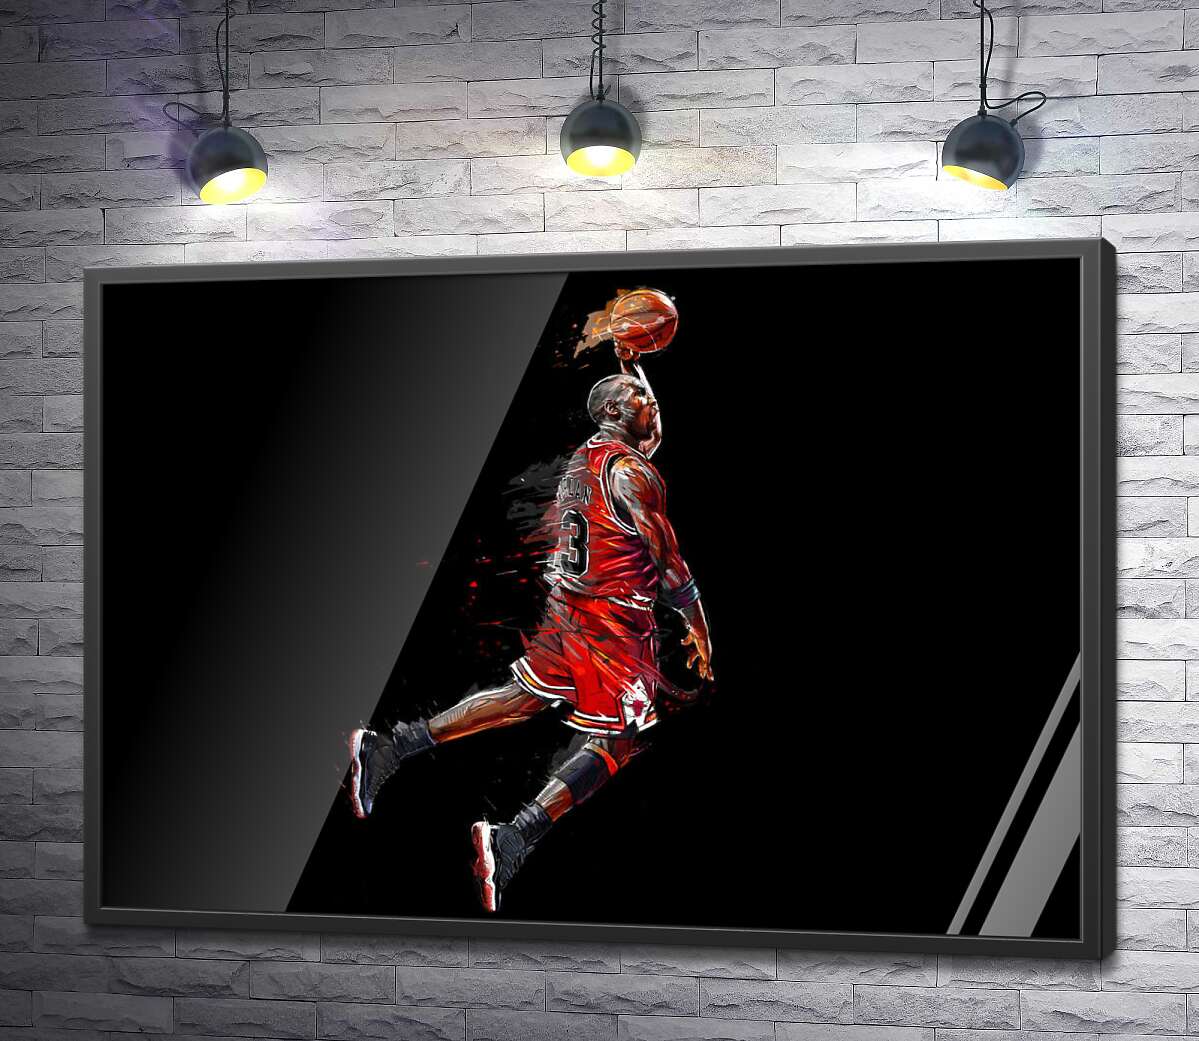 постер Легендарный баскетболист, Майкл Джордан (Michael Jordan), в прыжке